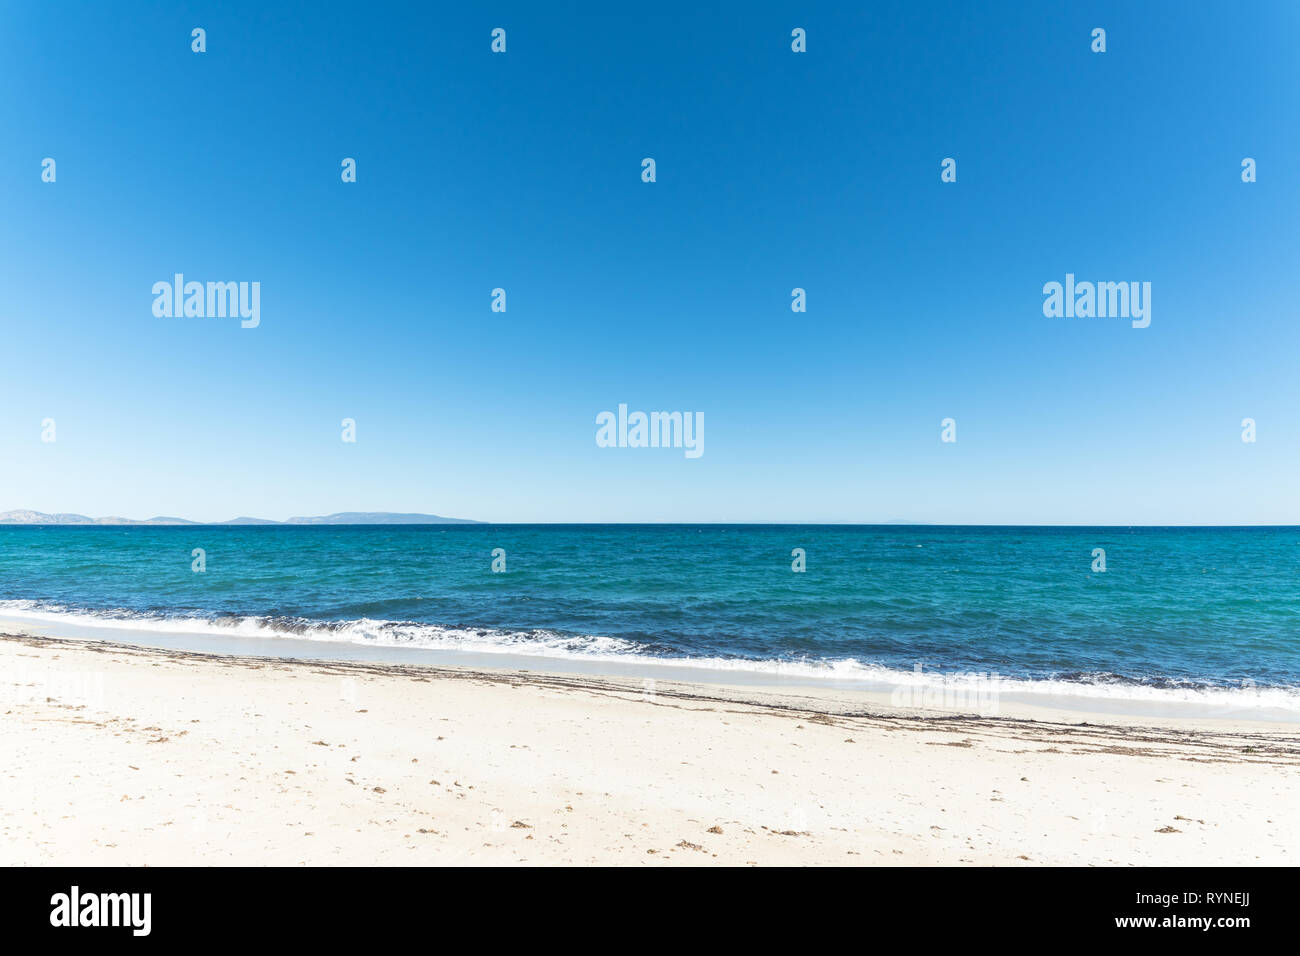 Paesaggio di vuoto spiaggia tropicale con sabbia bianca e acqua turchese Foto Stock